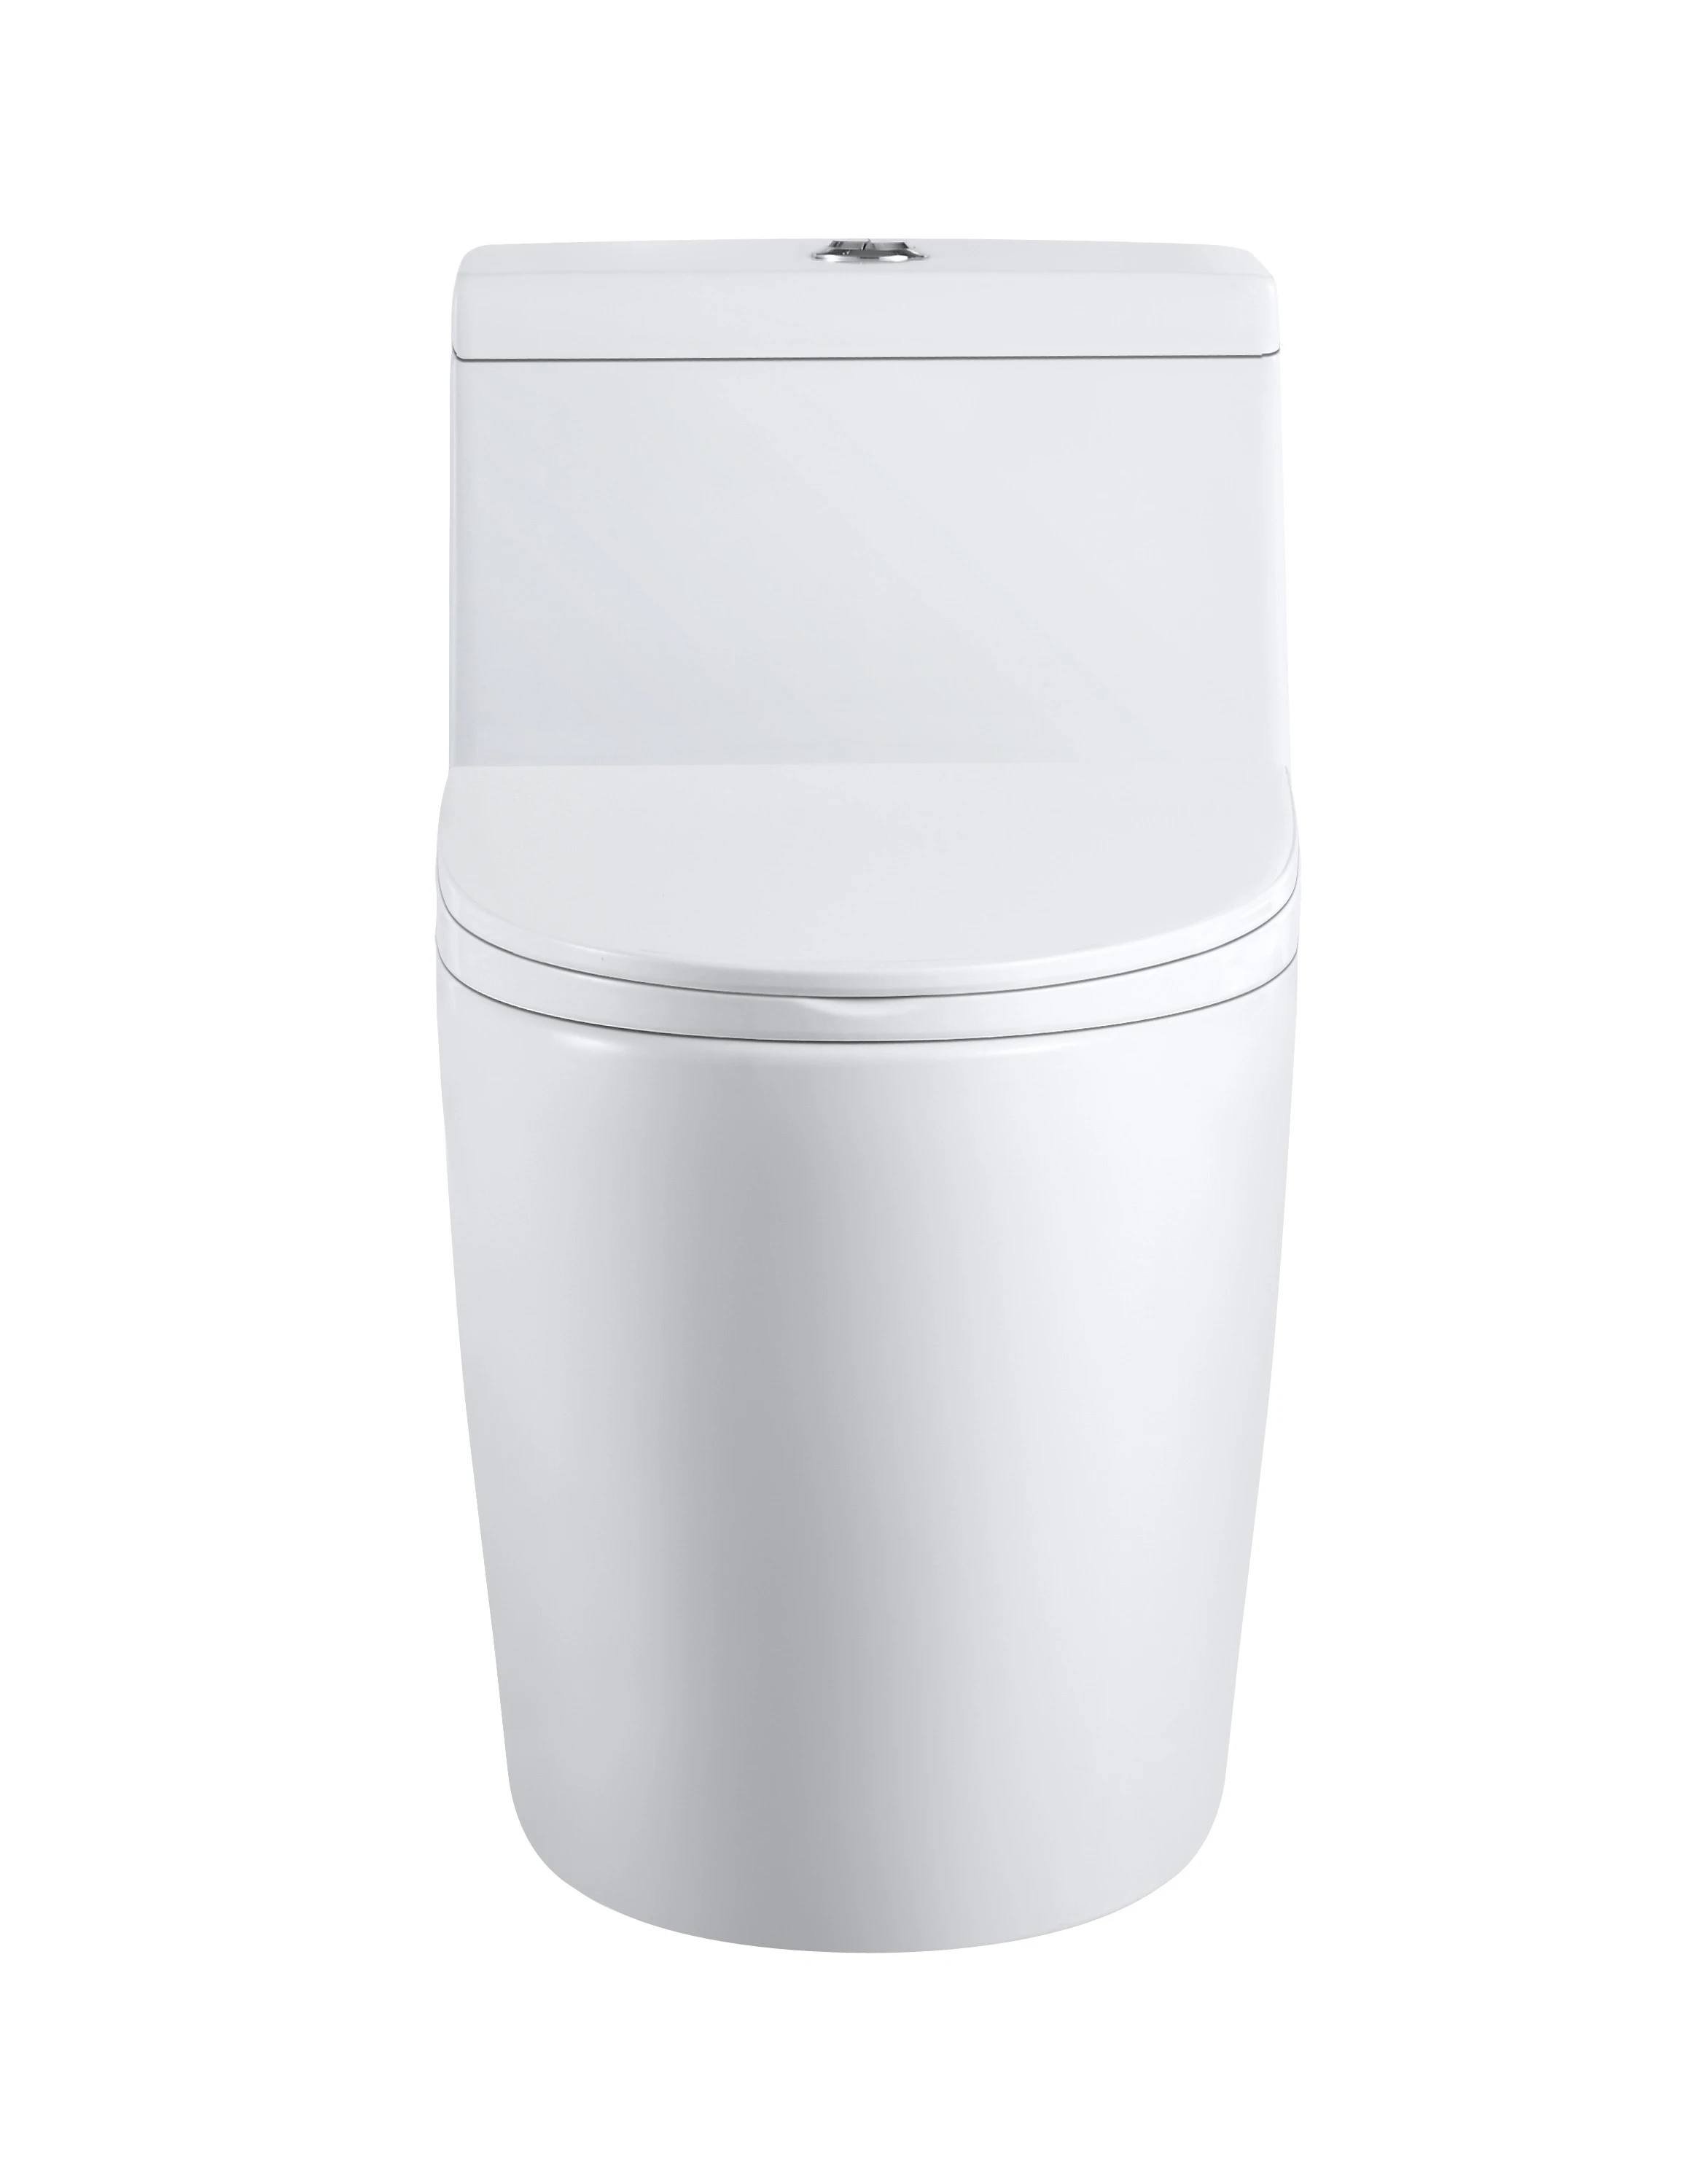 New designs Bathroom sanitary ware ceramic wc pan toilet